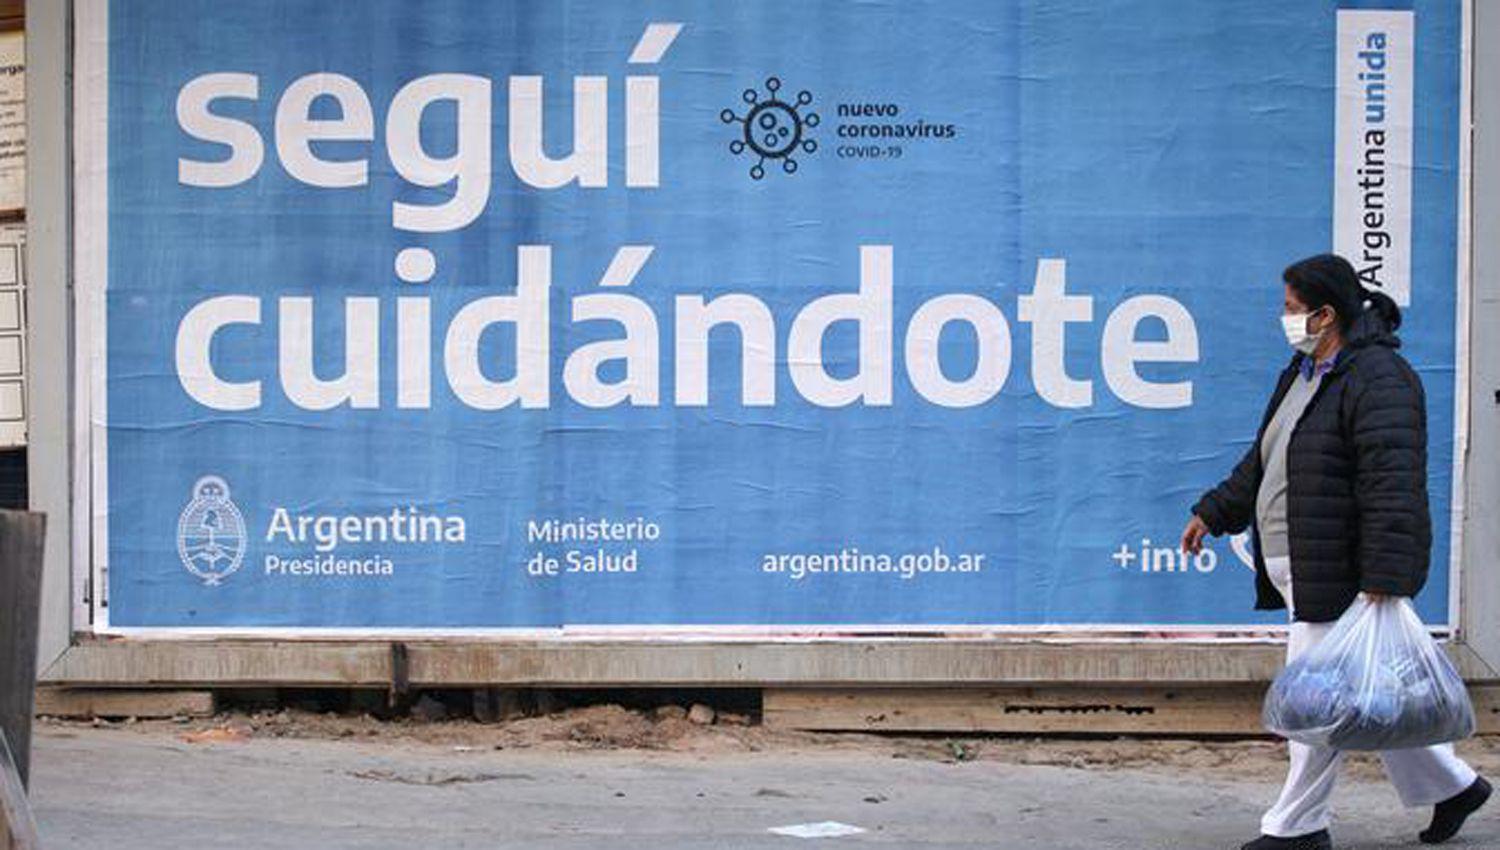 Argentina sigue rompiendo reacutecords de contagios- 39652 este mieacutercoles y 494 nuevas muertes